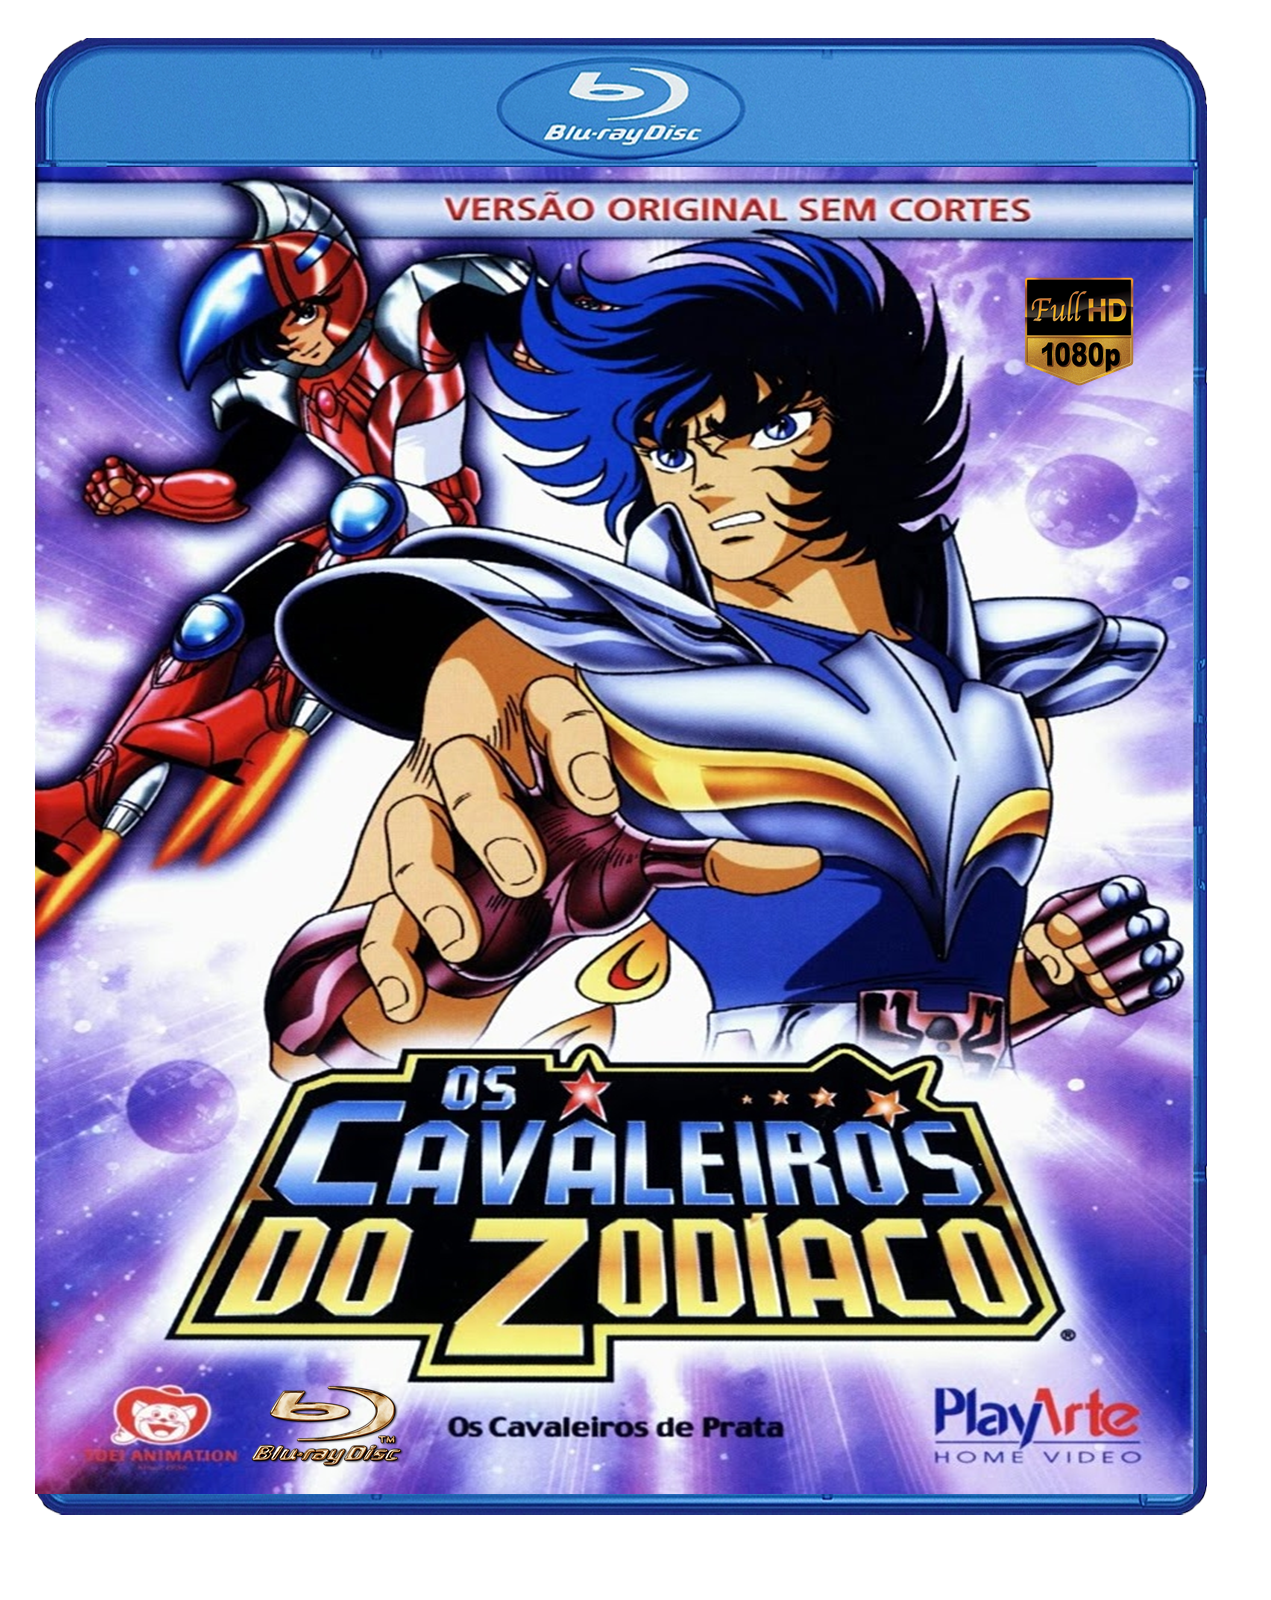 Anime Cavaleiros do zodiaco em Blu Ray 1080p Full HD